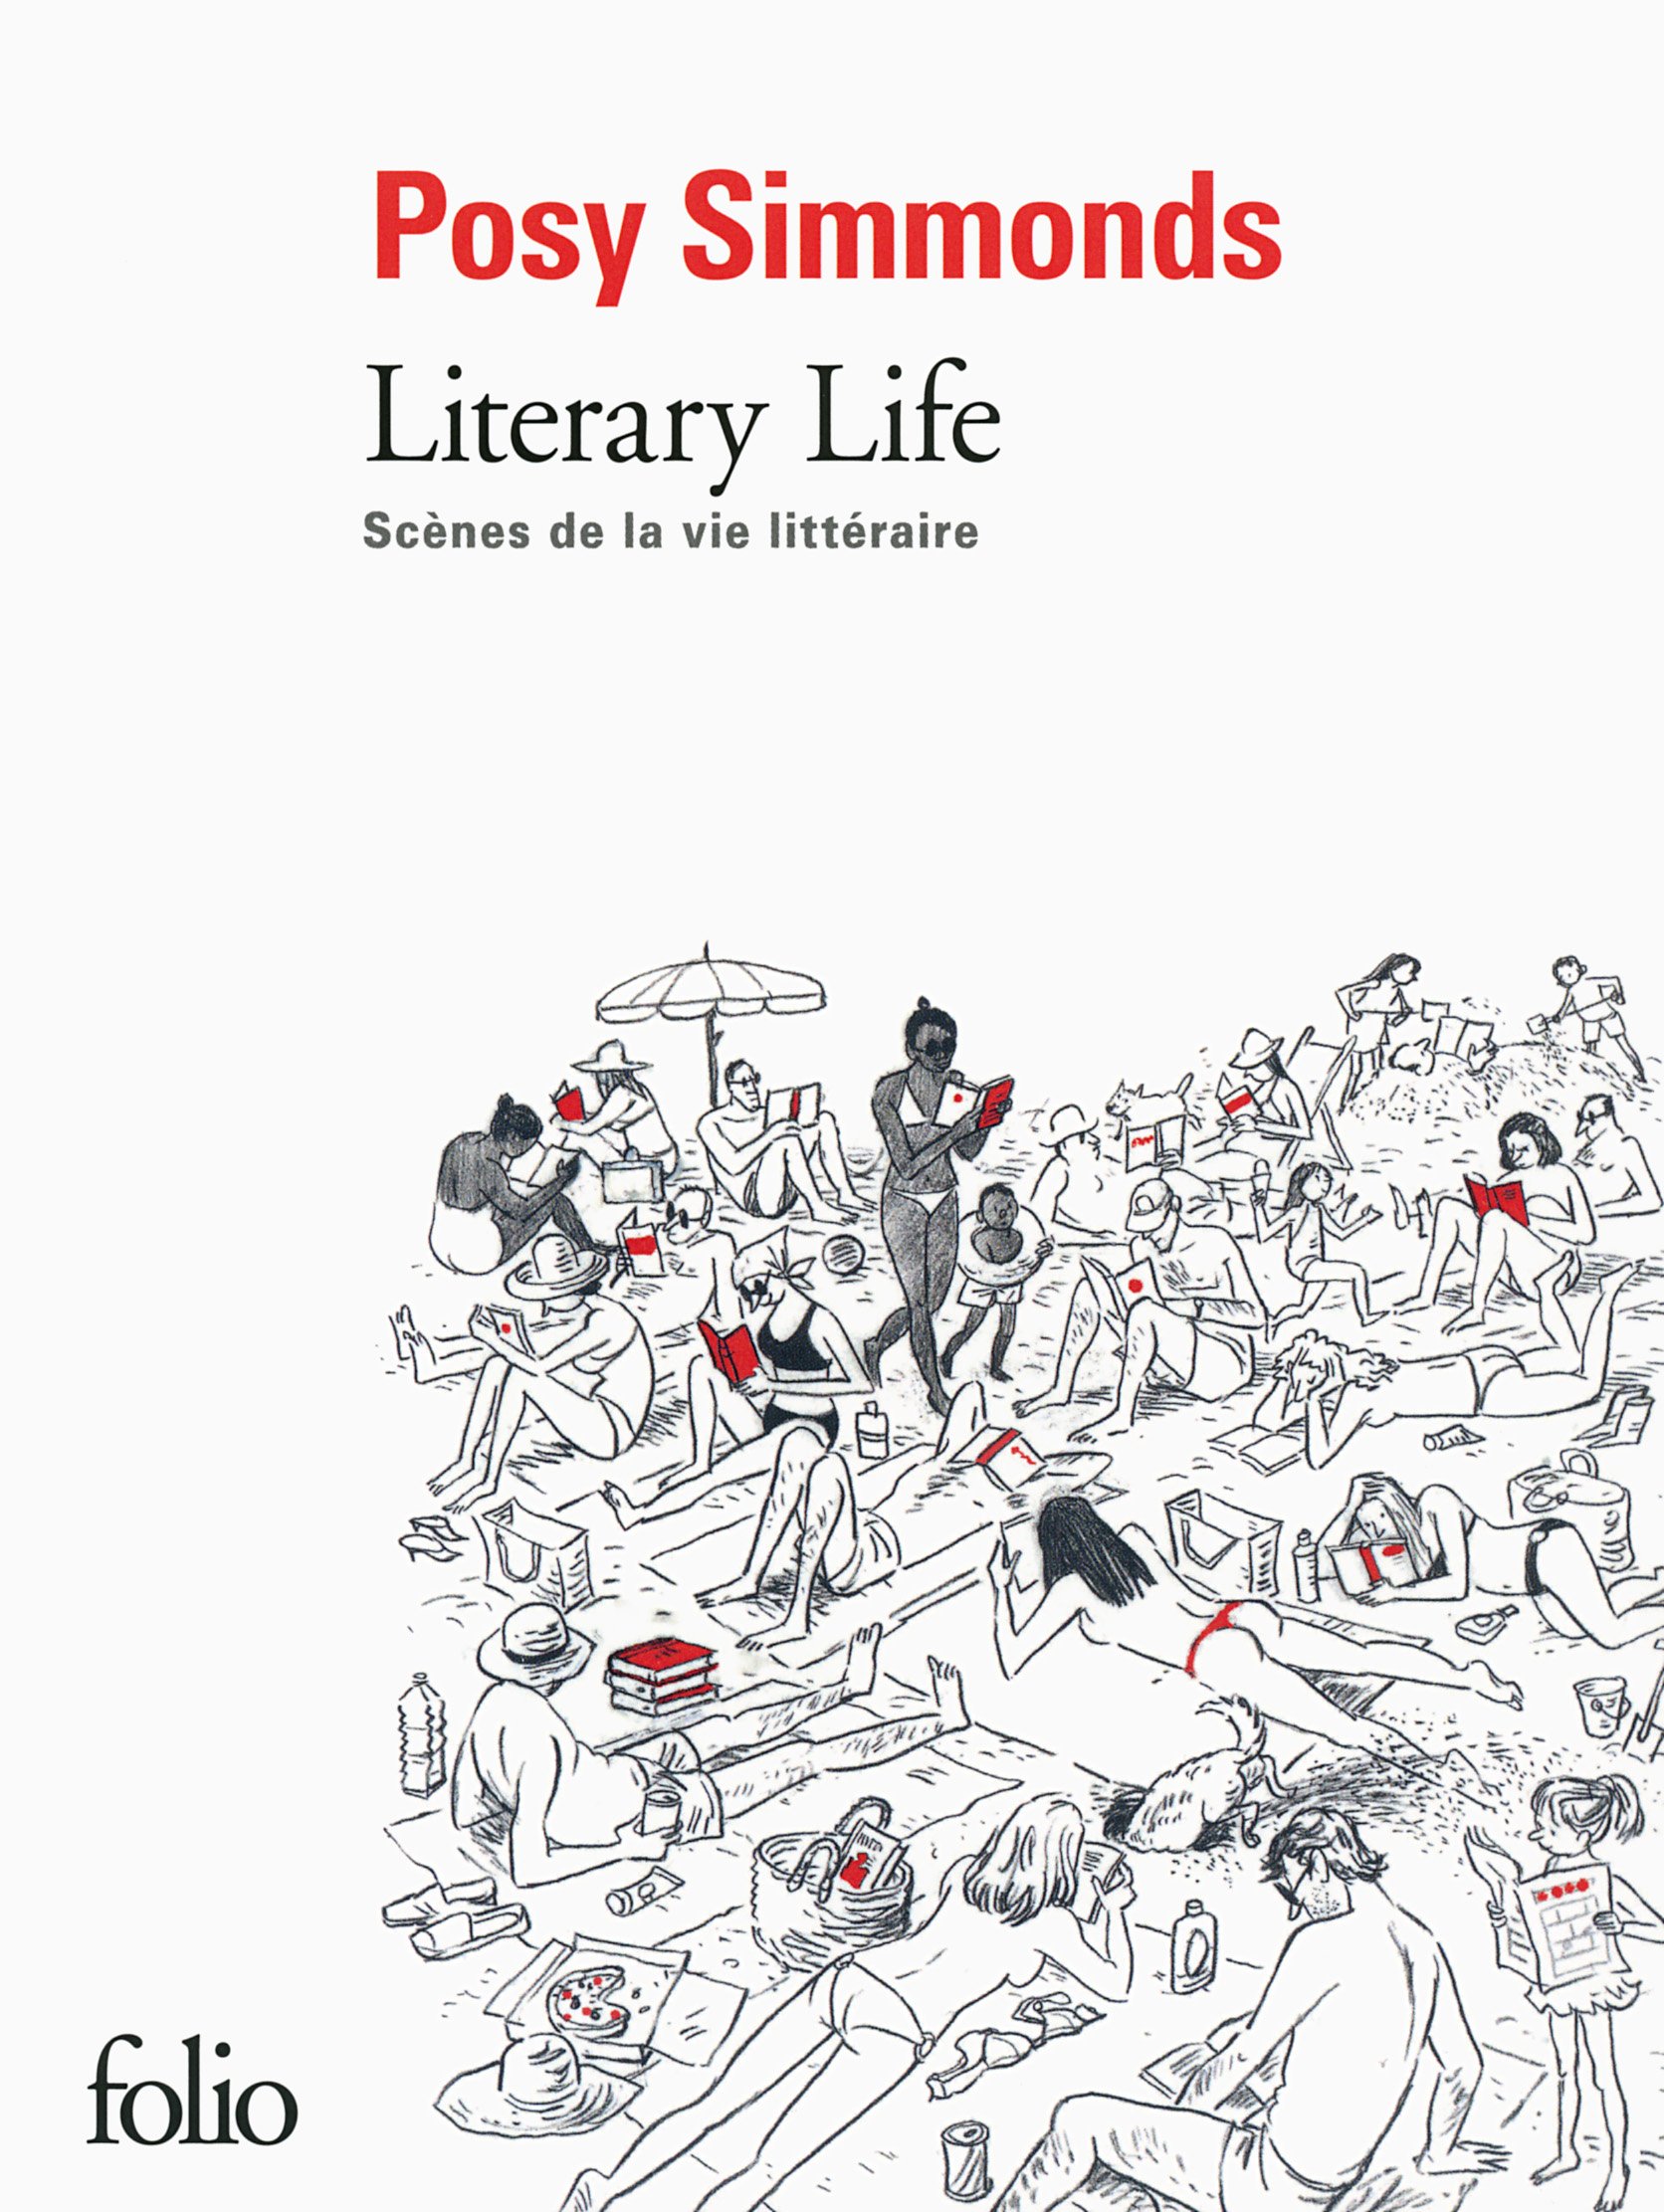 Literary life: Scenes de la vie litteraire